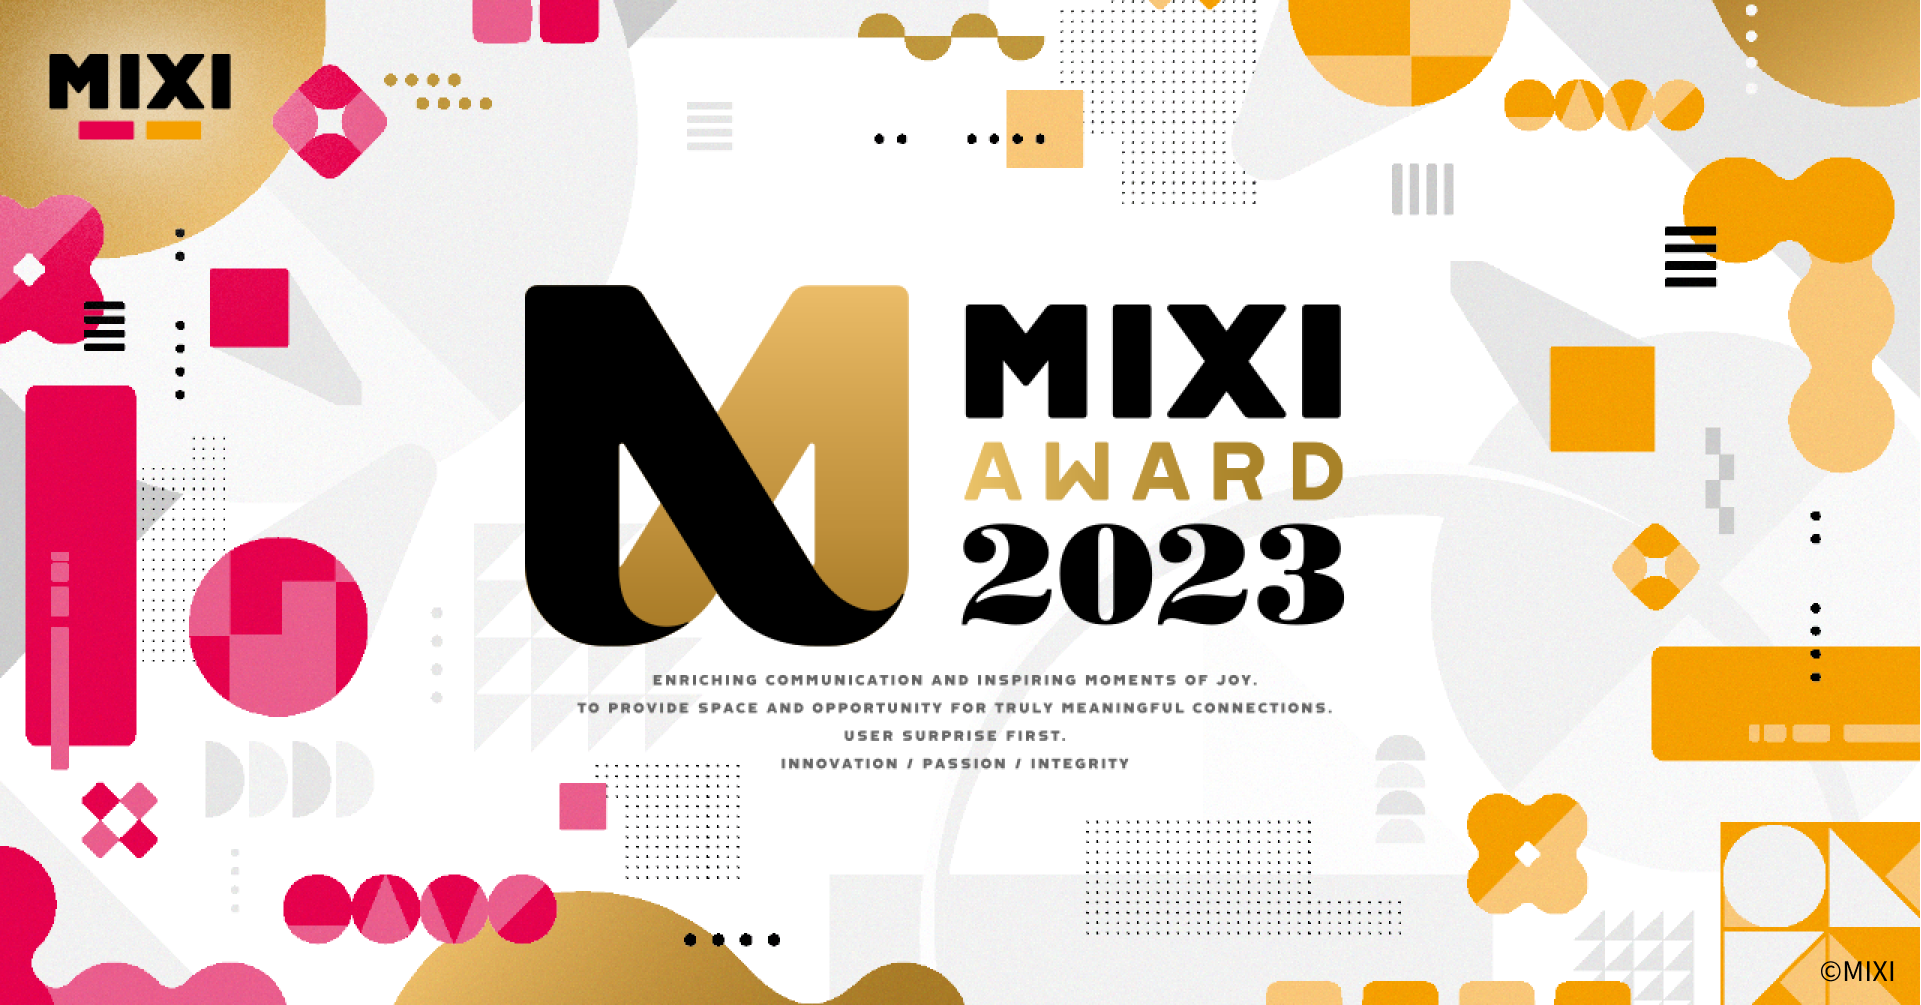 企業理念浸透の「拠り所」をつくるように。MIXI AWARD 2023のアートディレクションについてのサムネイル画像